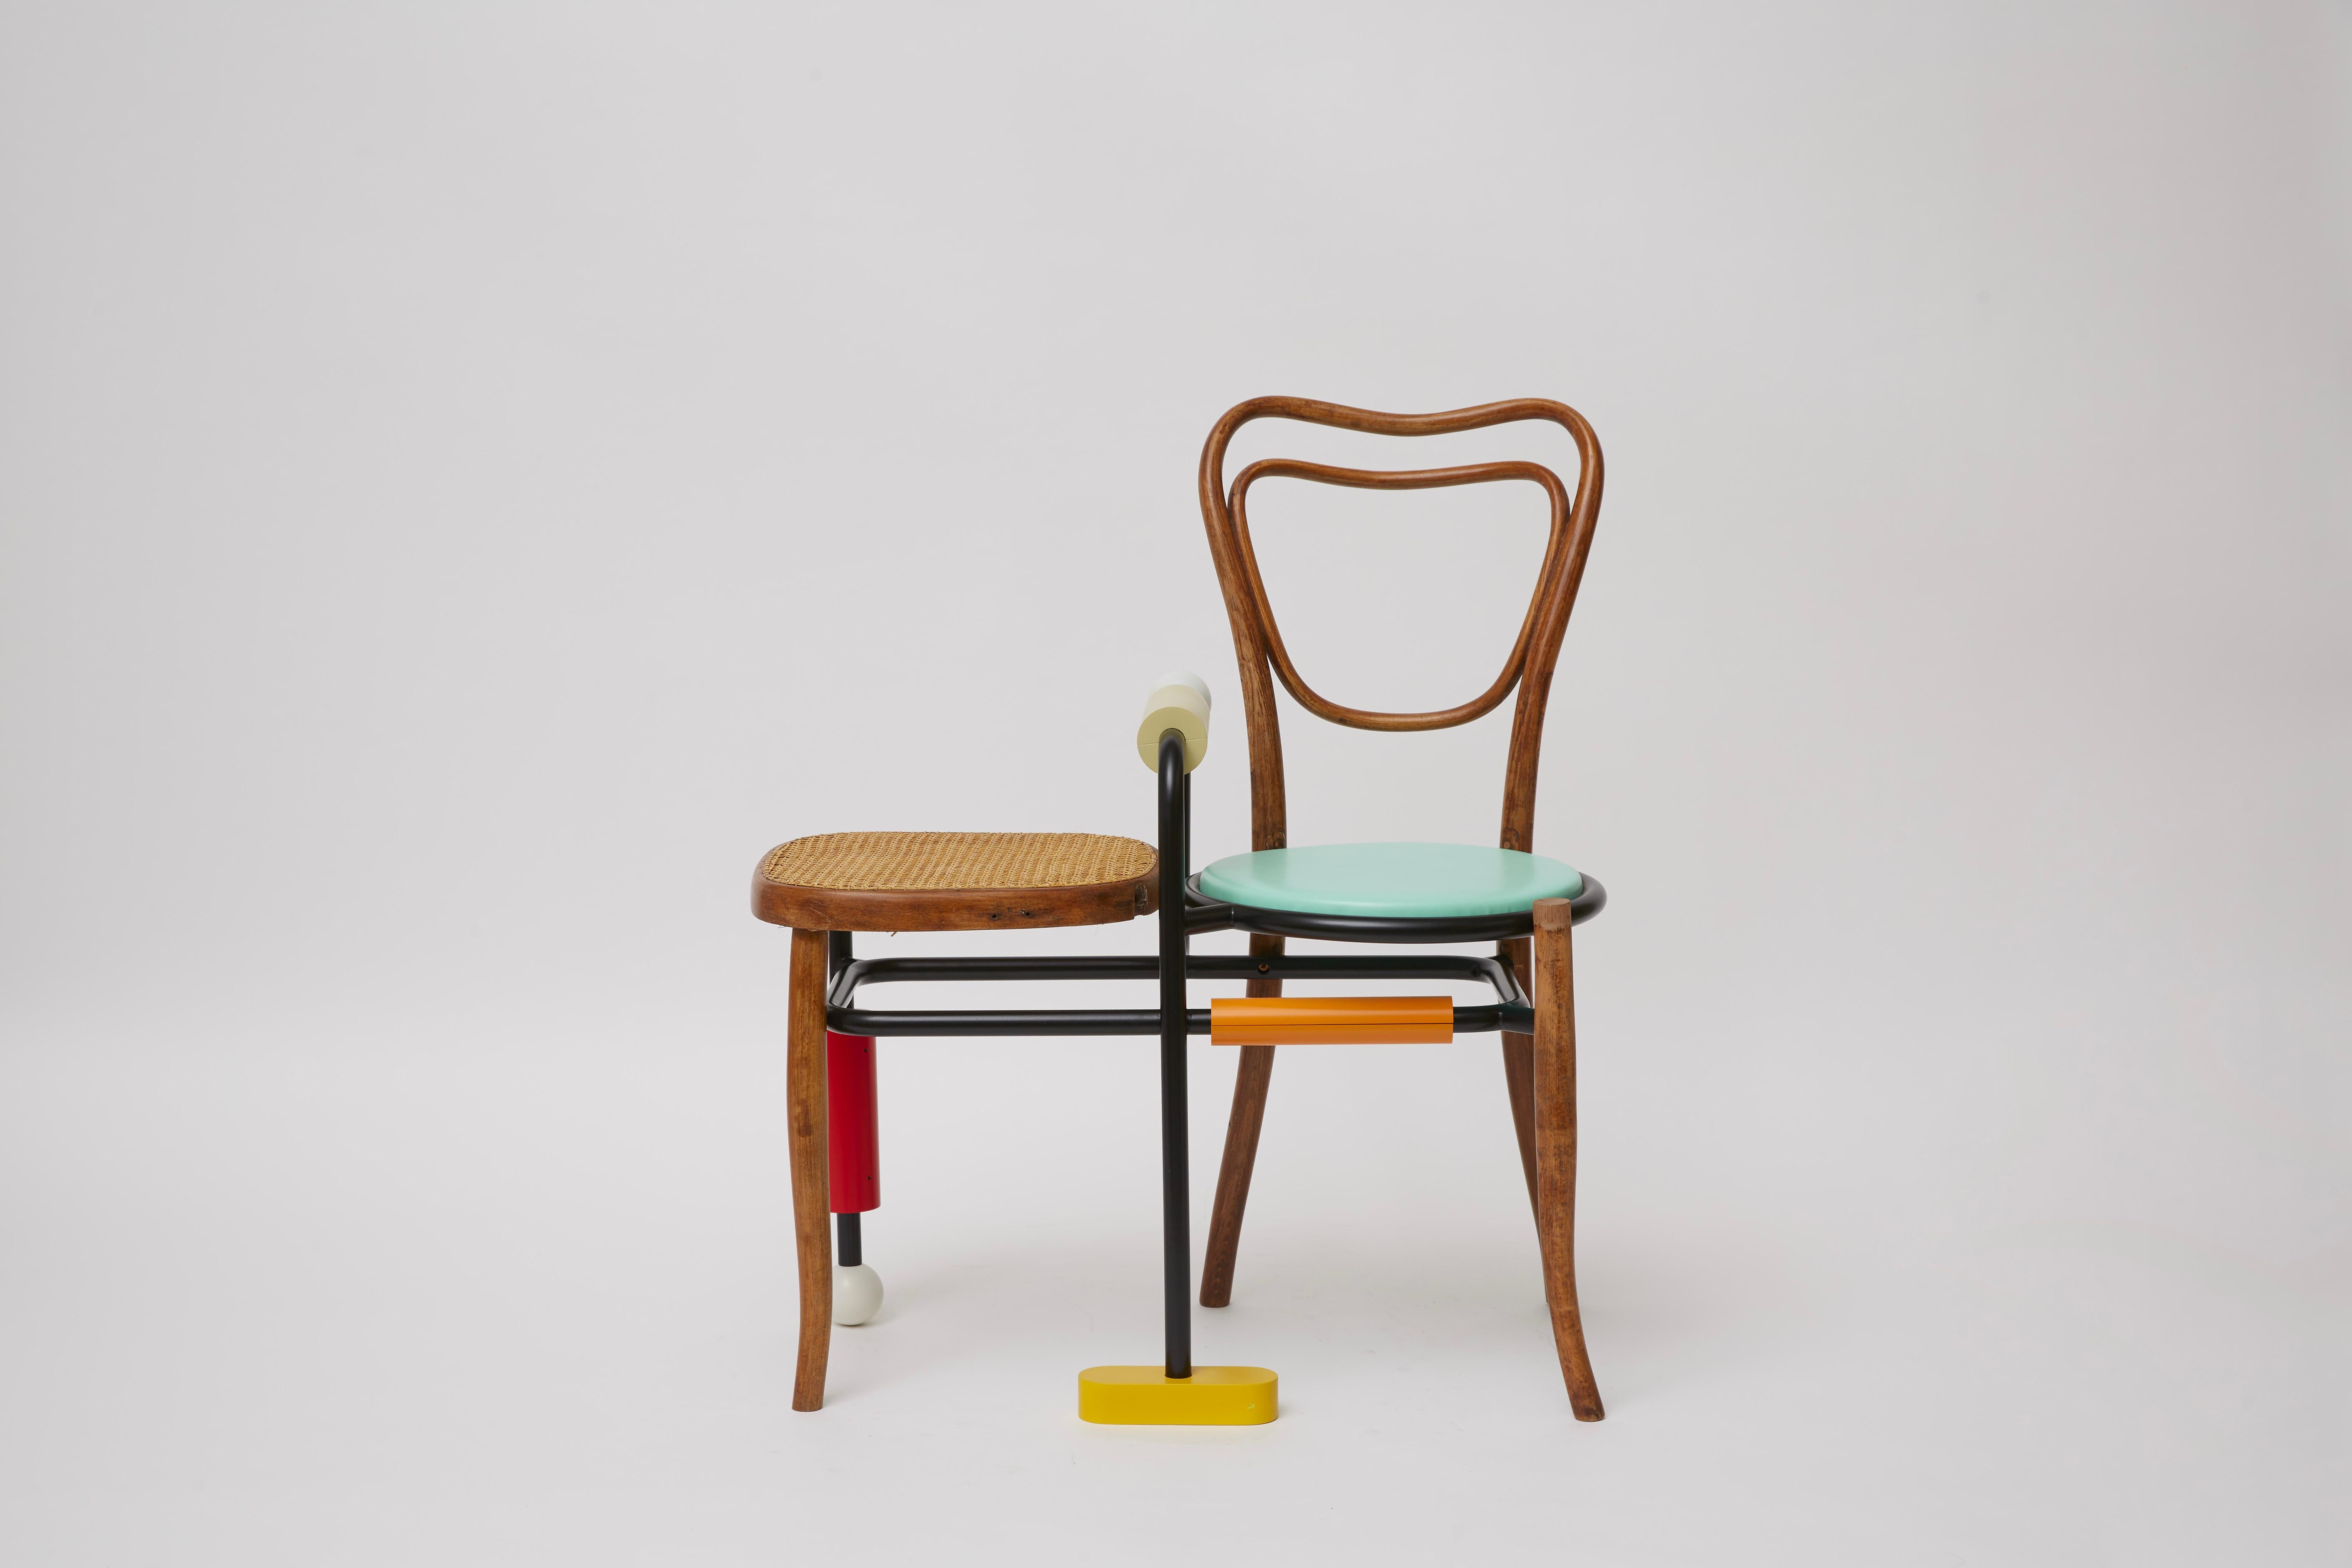 Cette chaise en bois de style Thonet, qui fait partie de la Collection Morse Clash de designs développés en tenant compte du langage éponyme fait de points et de tirets, incorpore une table d'appoint et des éléments structurels en acier tubulaire